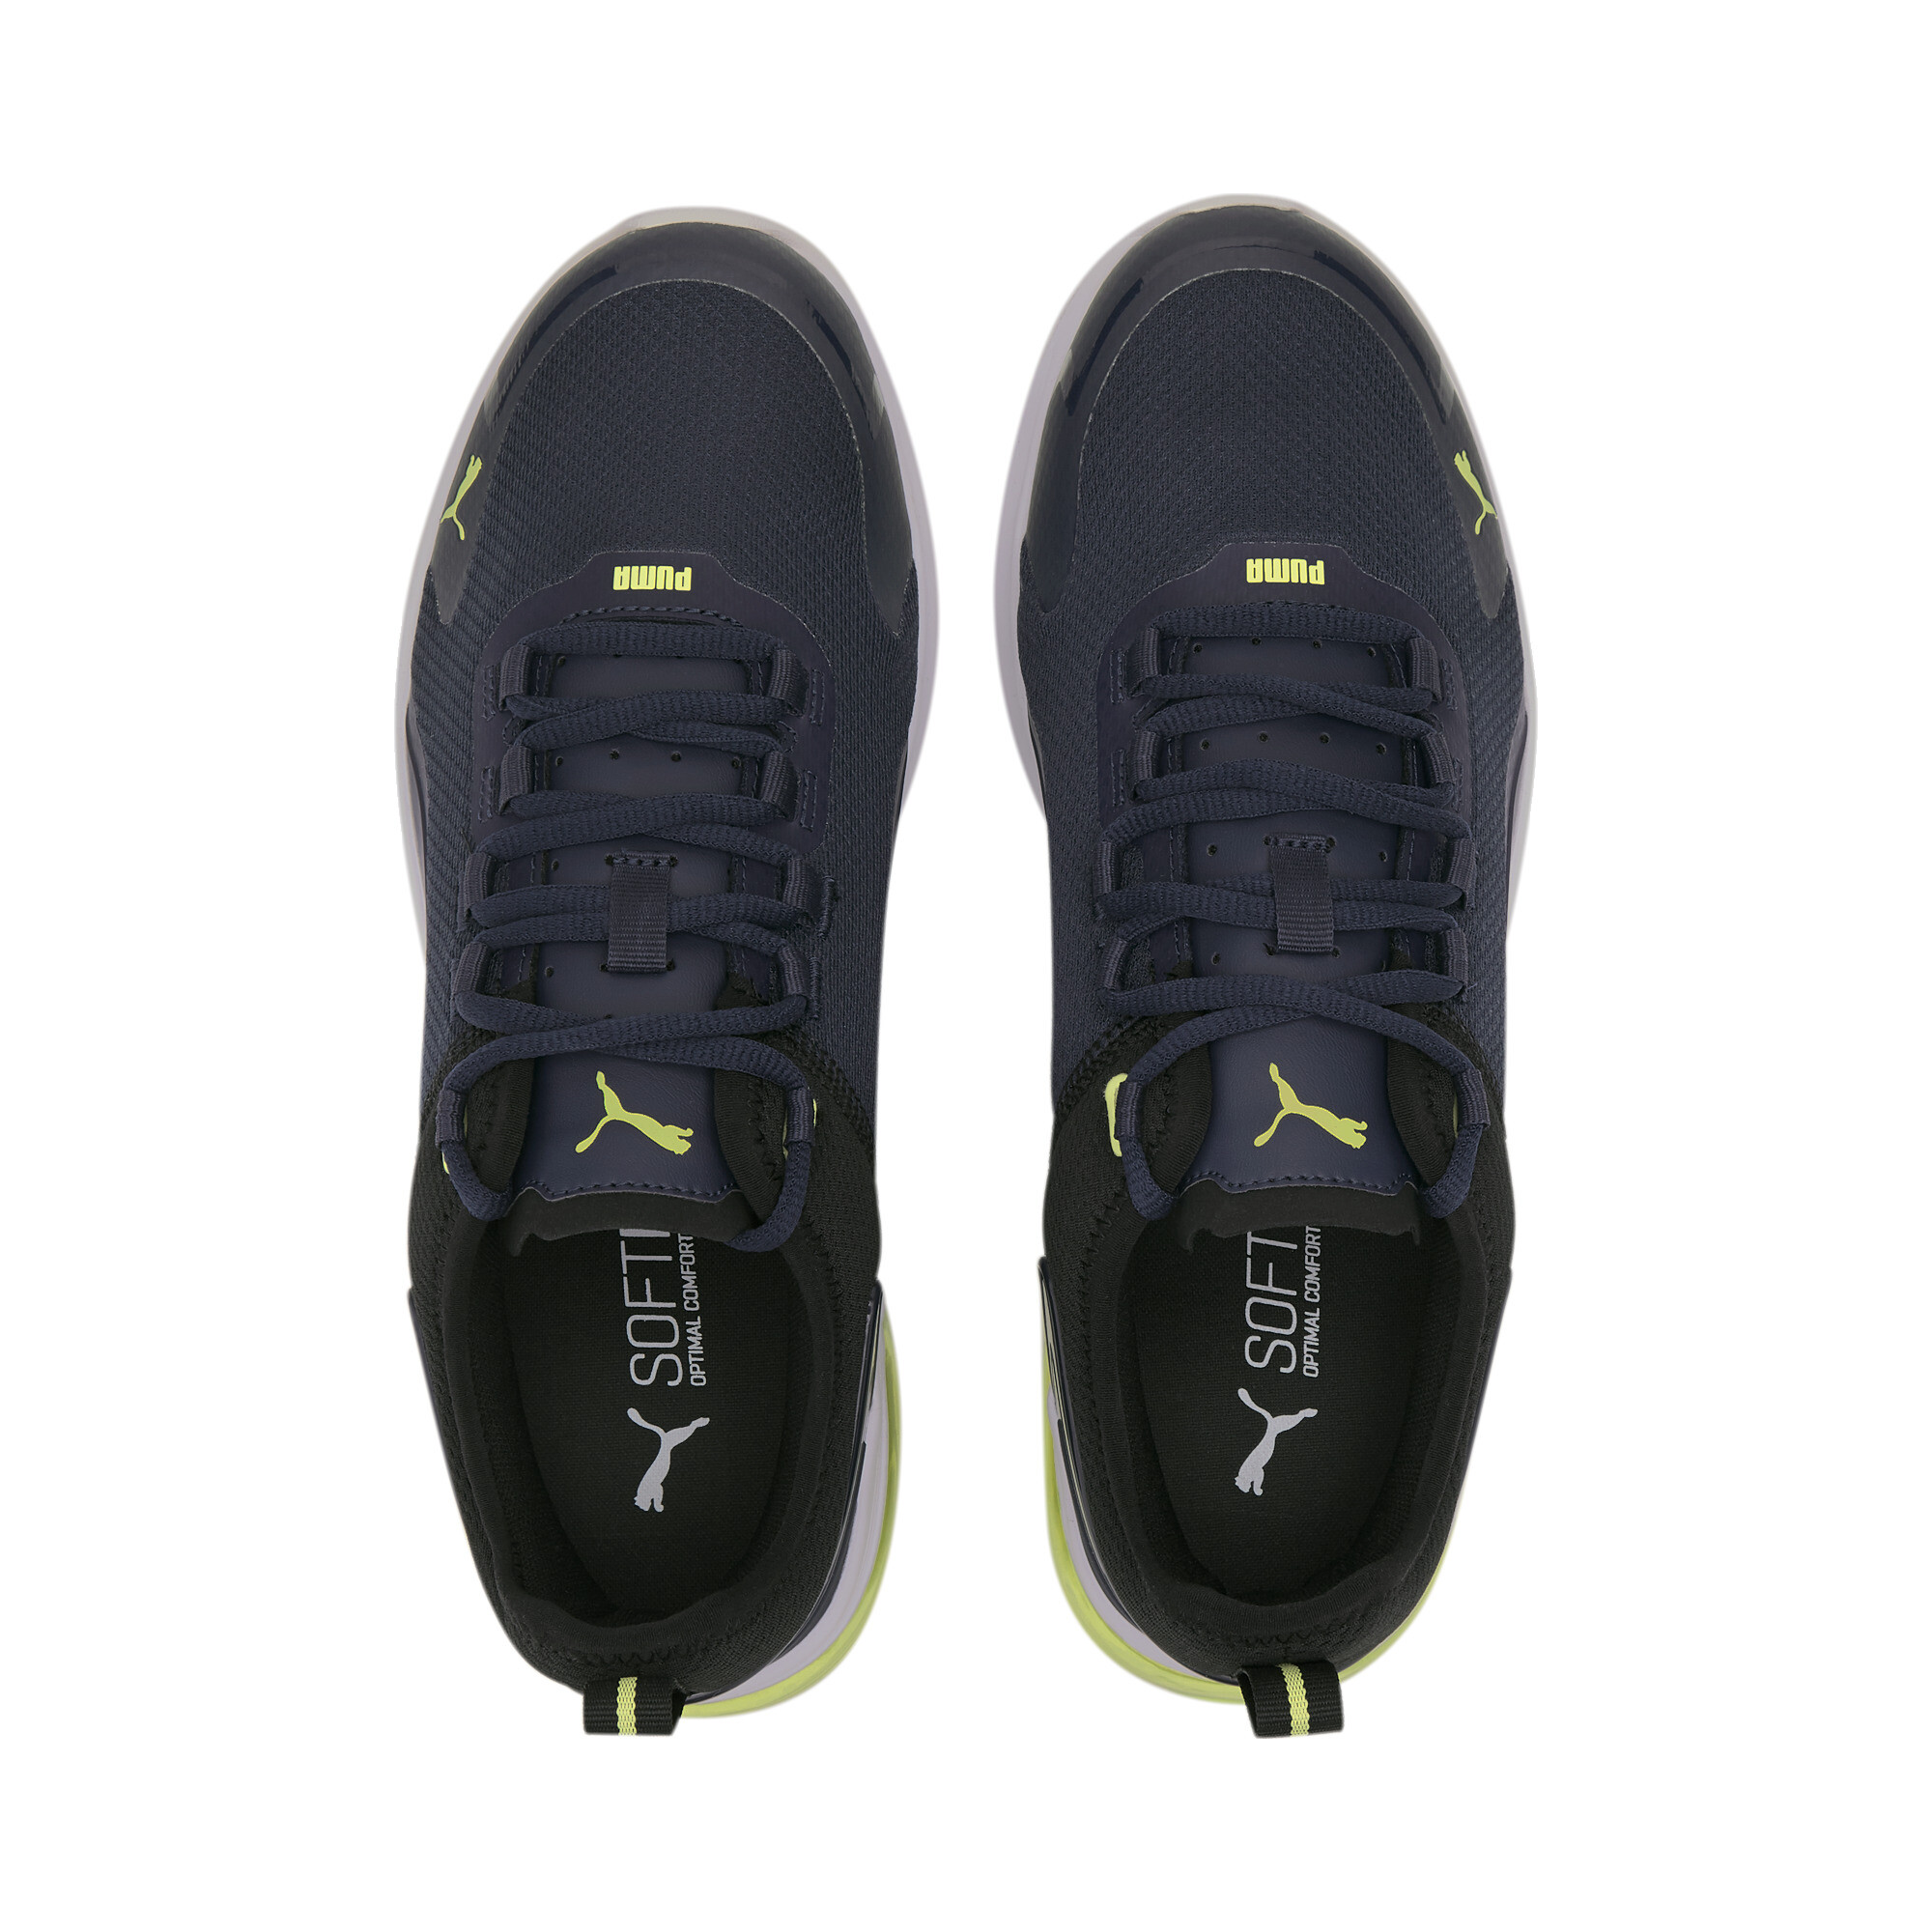 Indexbild 19 - PUMA Electron Street Era Sneaker Unisex Schuhe Basics Neu